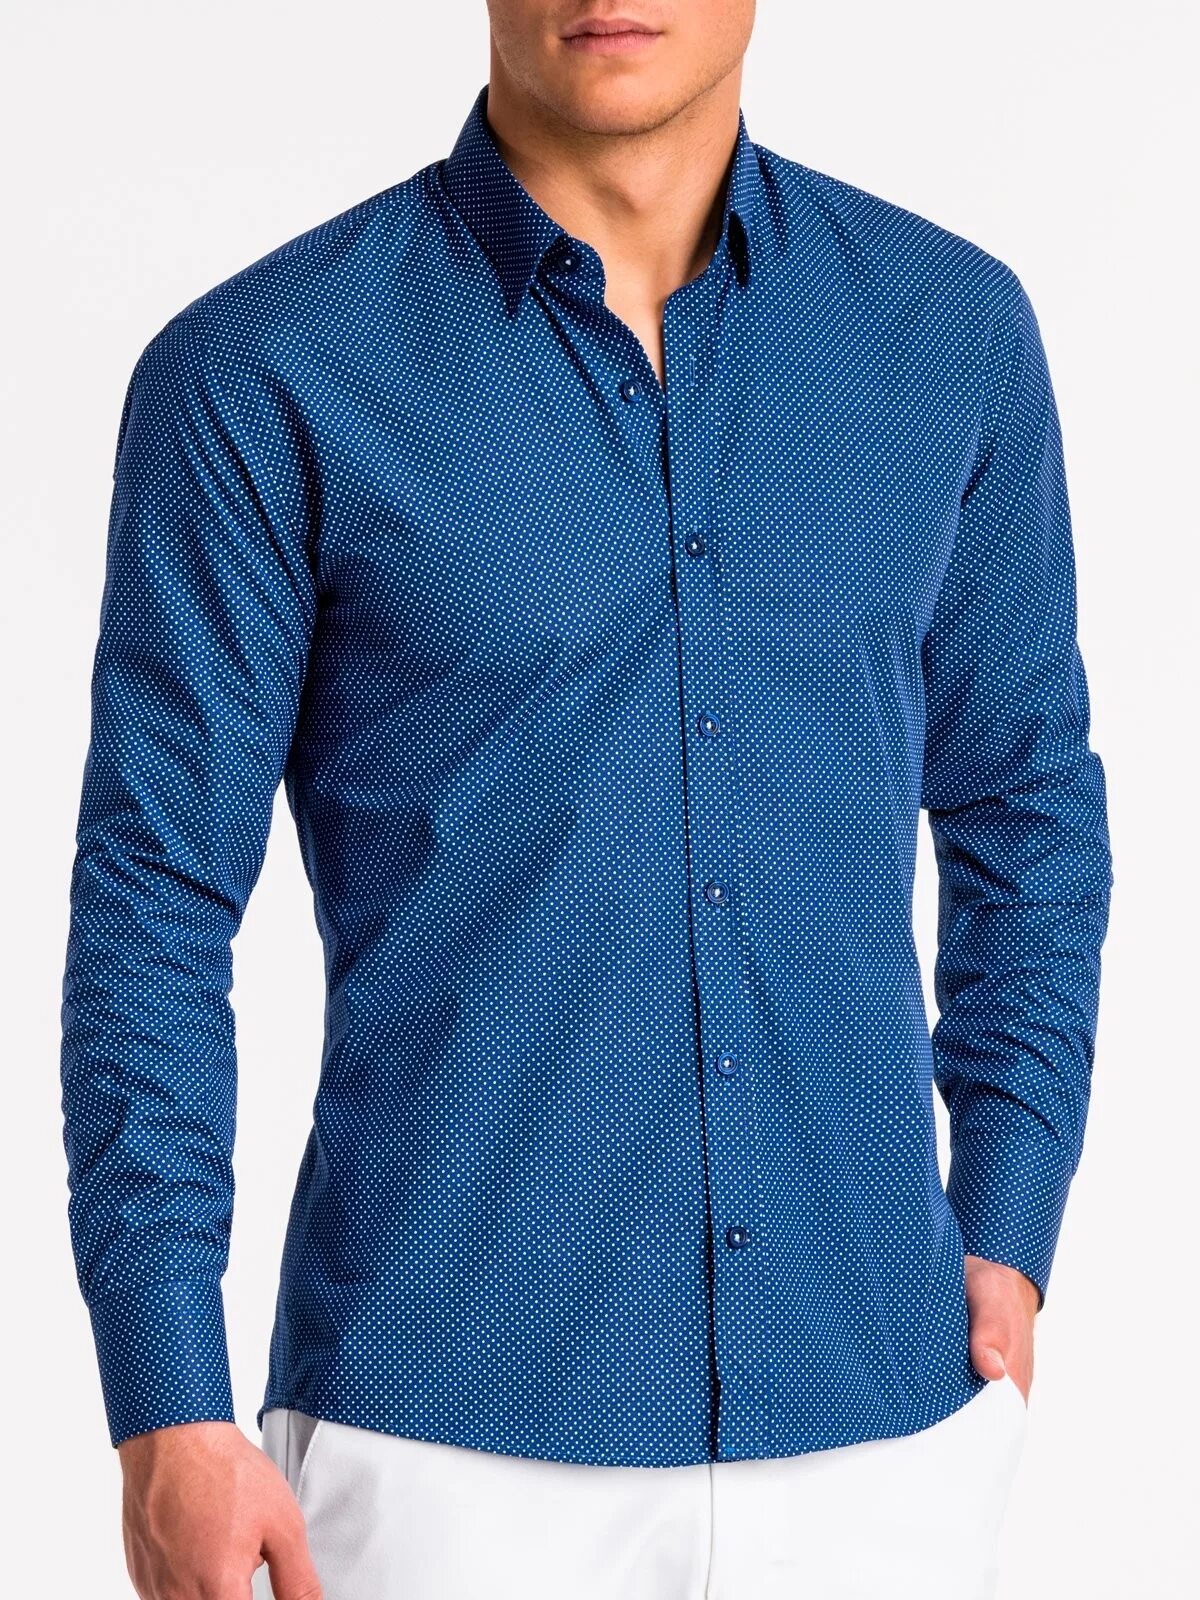 Купить синюю рубашку мужскую. Рубашка мужская. Синяя рубашка. Светло синяя рубашка мужская. Сорочка мужская синяя.